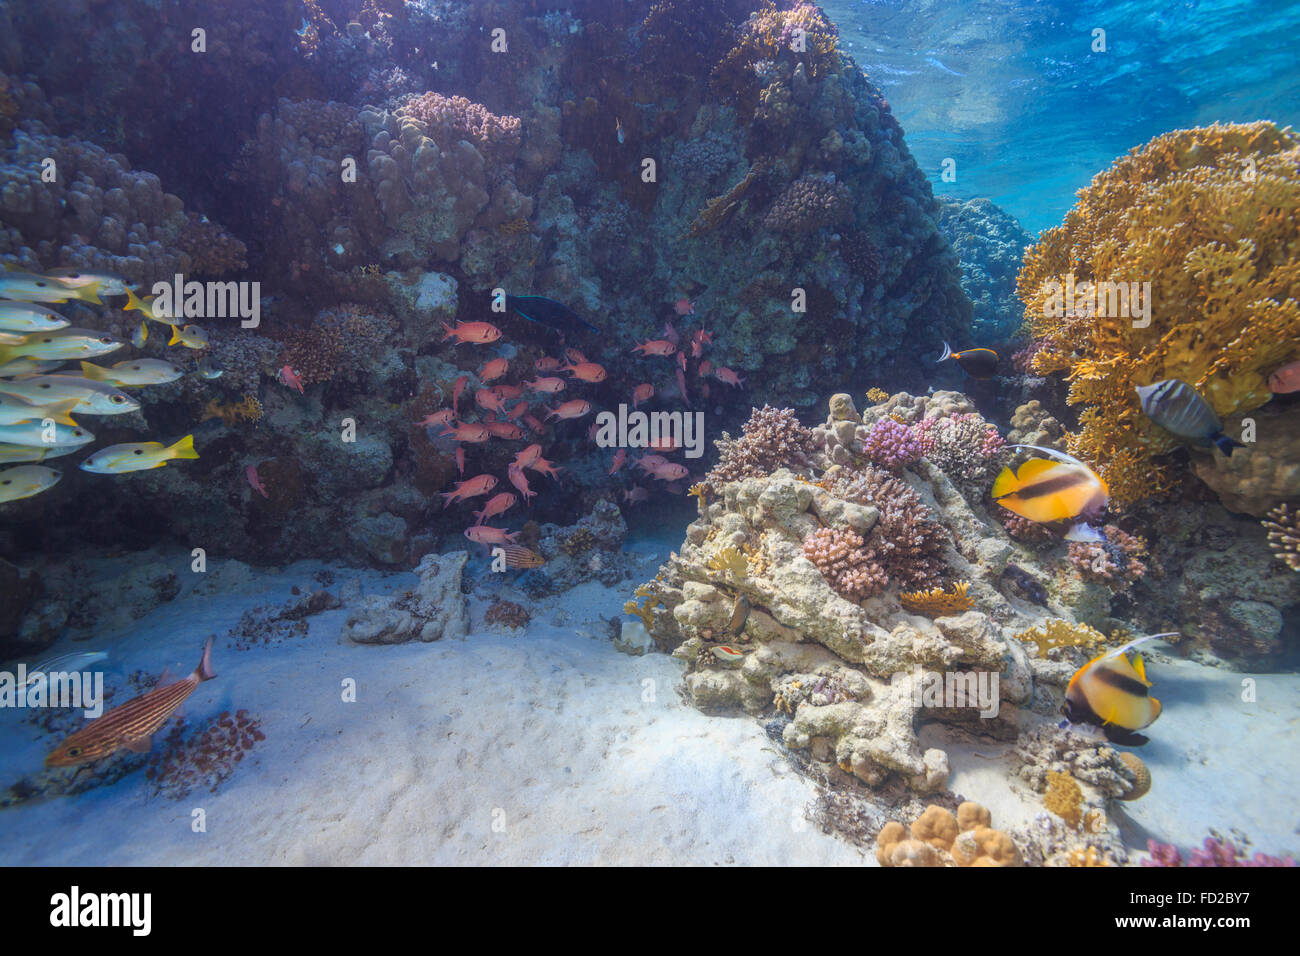 Aquatique, aquarium, fond, bleu, corail, coloré, profond, profondeur, plongeur, plongée, Egypte, exotique, poisson, poissons, paysage, Banque D'Images